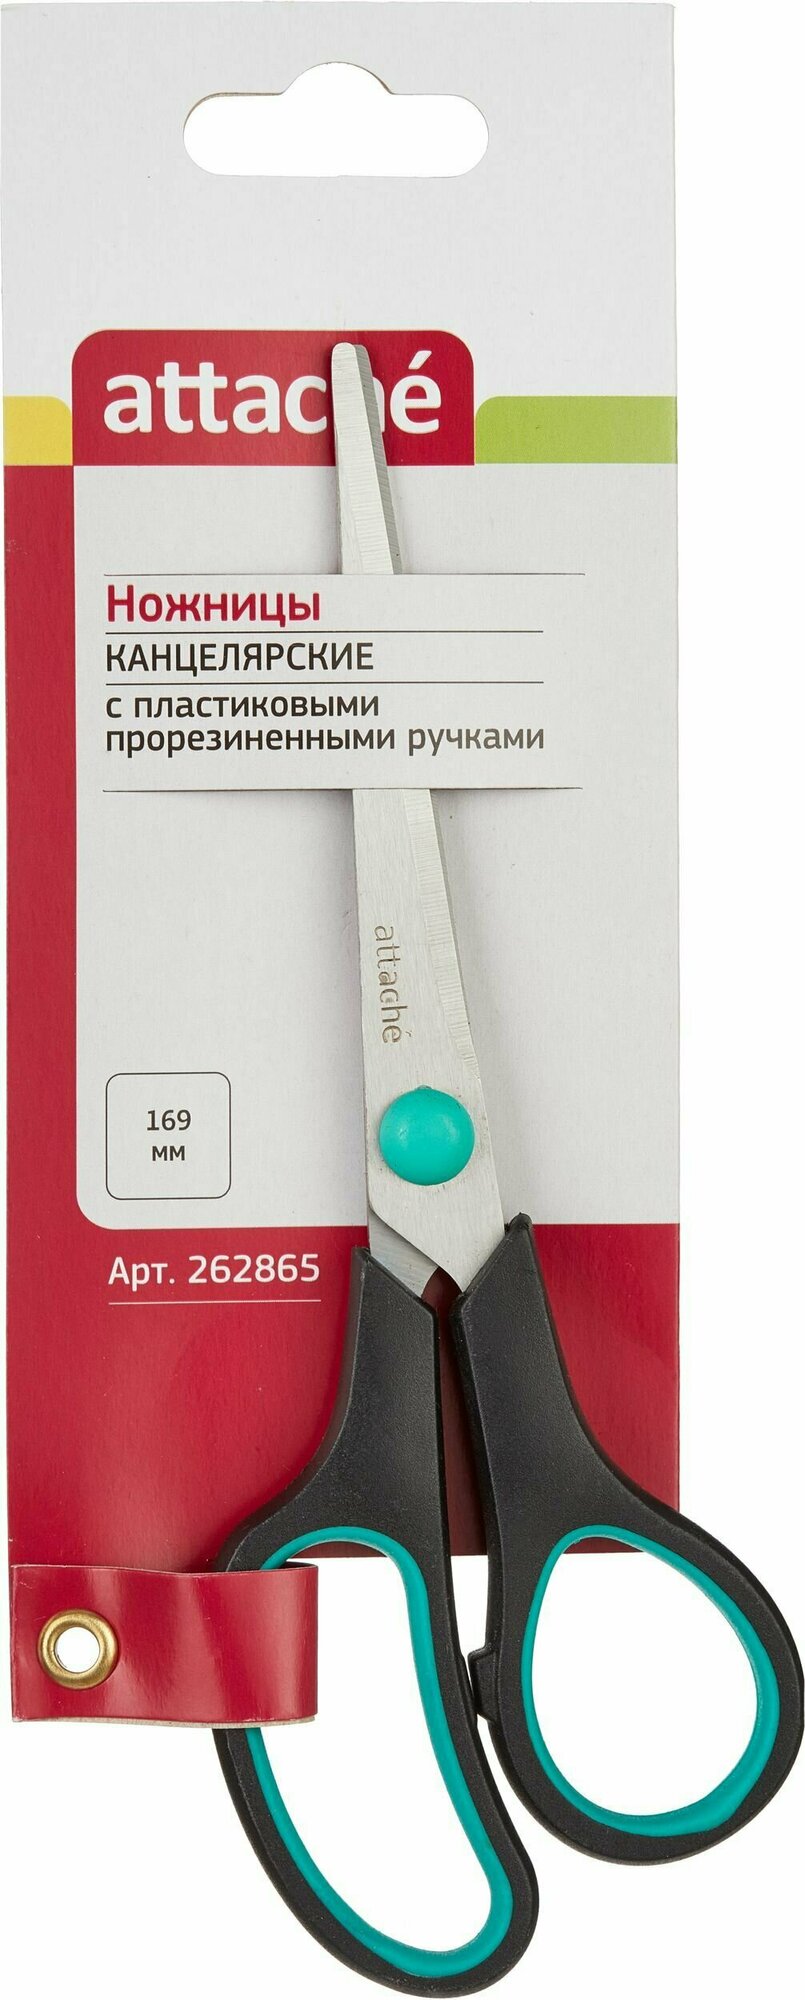 Ножницы Attache 169 мм, с пластиковыми прорезиненными ручками, цвет зелено-черный